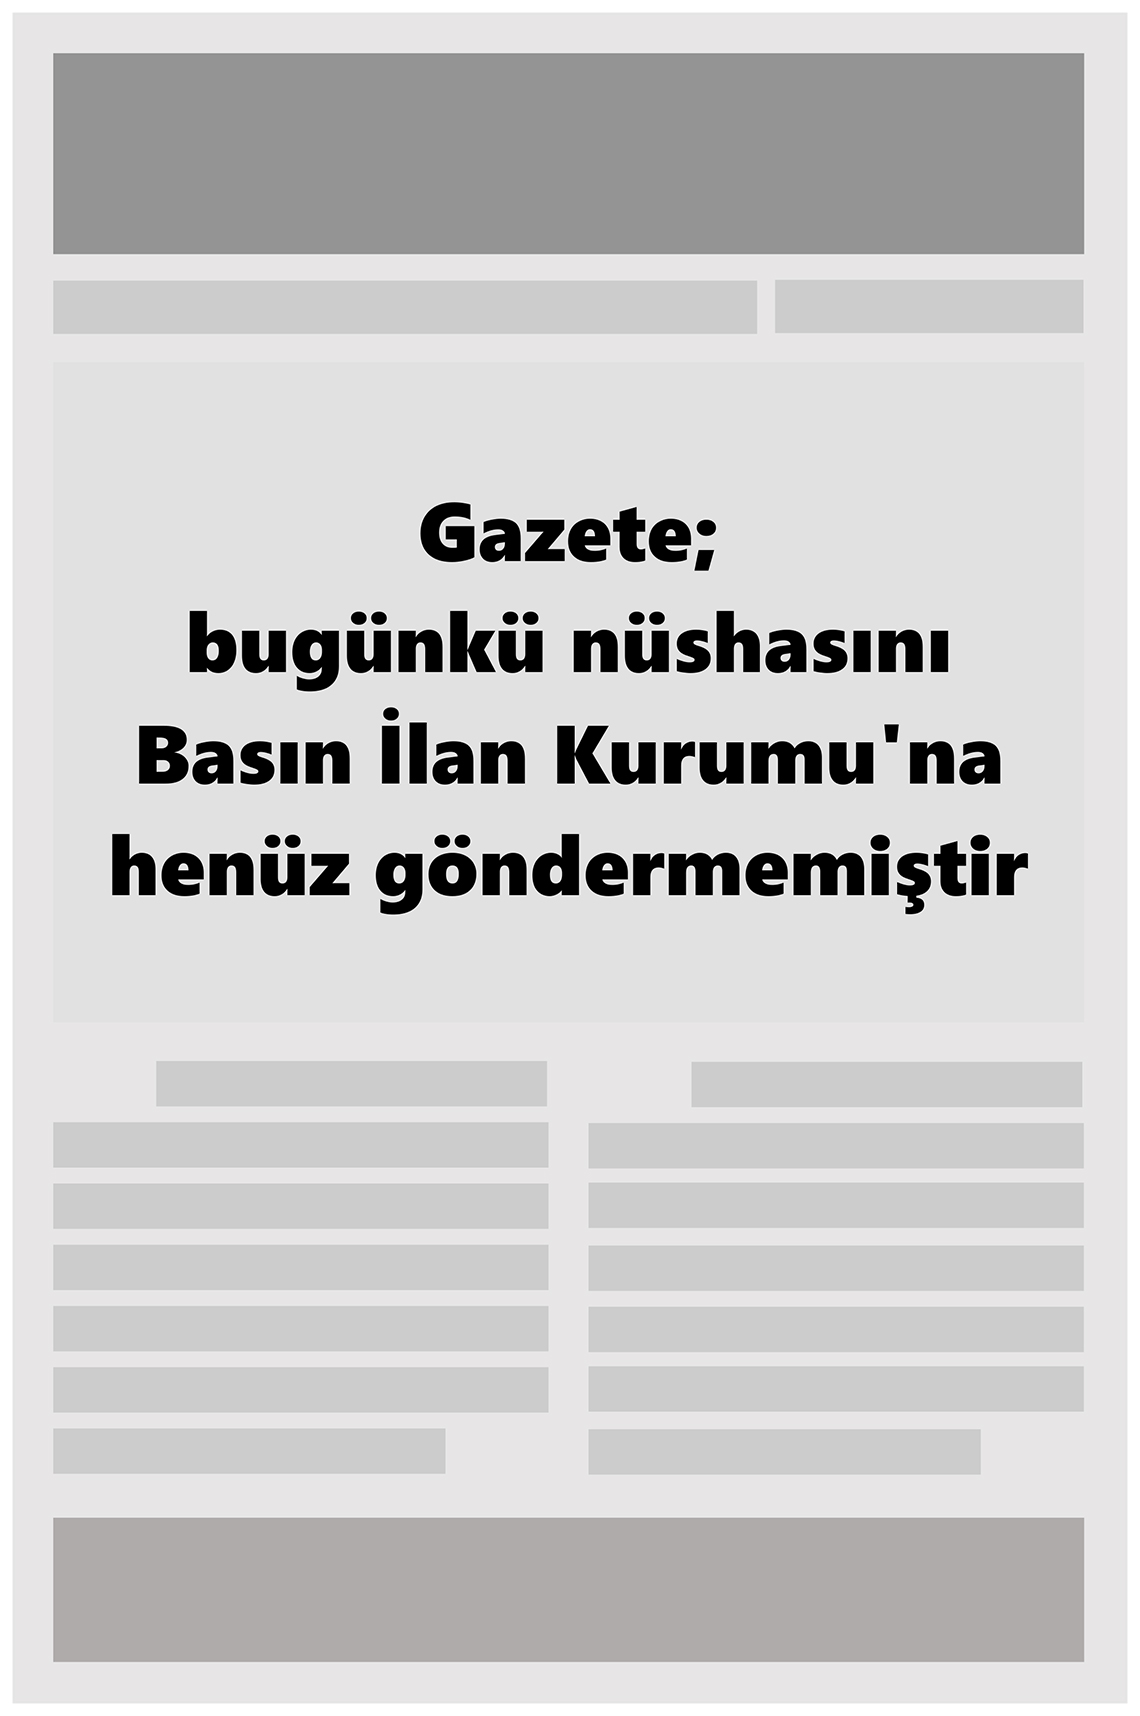 25 Eylül 2022 Gaziantep 27 Gazete Manşeti